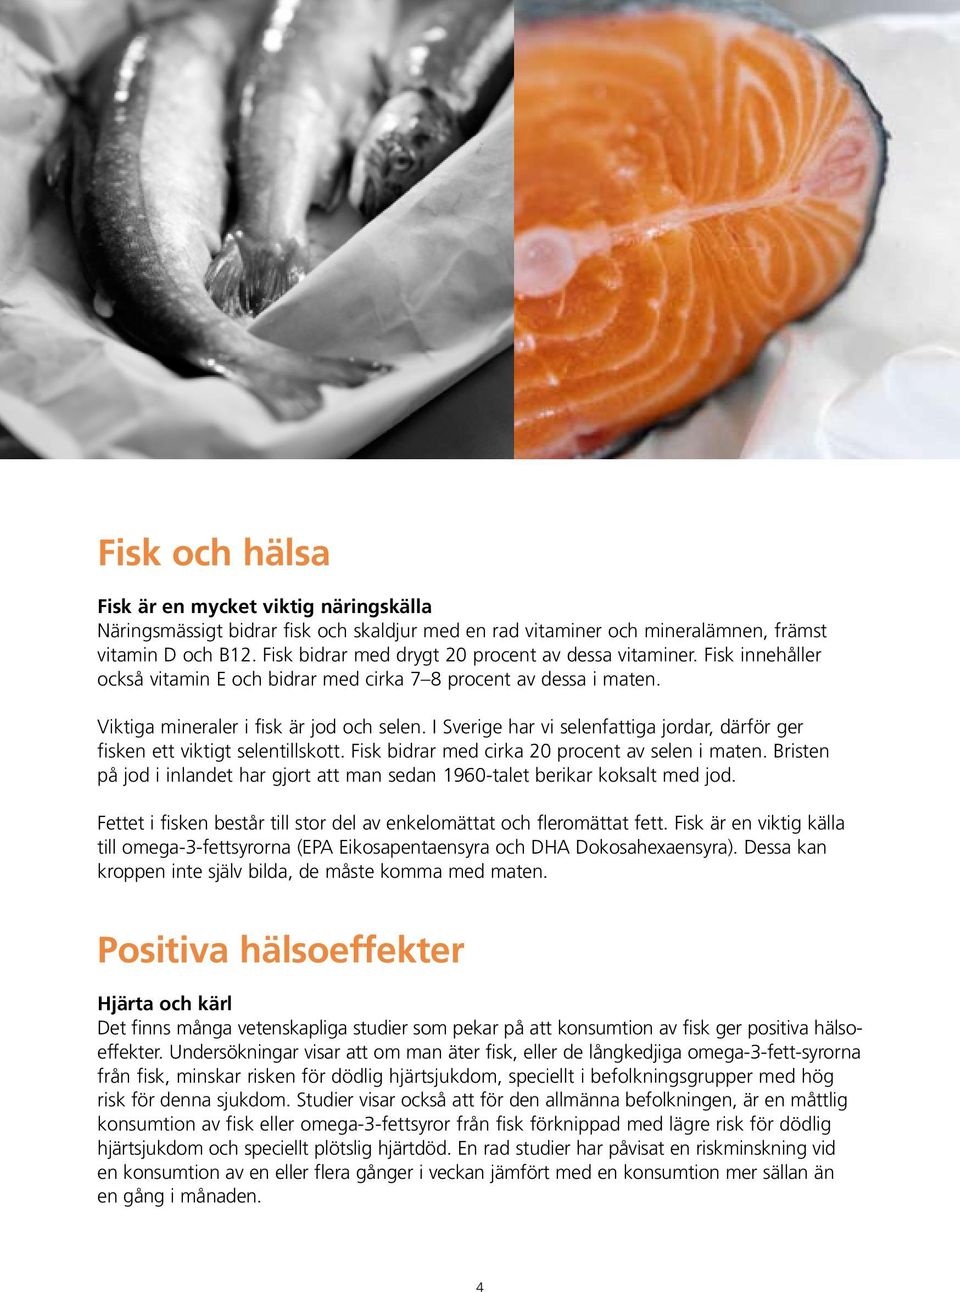 I Sverige har vi selenfattiga jordar, därför ger fisken ett viktigt selentillskott. Fisk bidrar med cirka 20 procent av selen i maten.